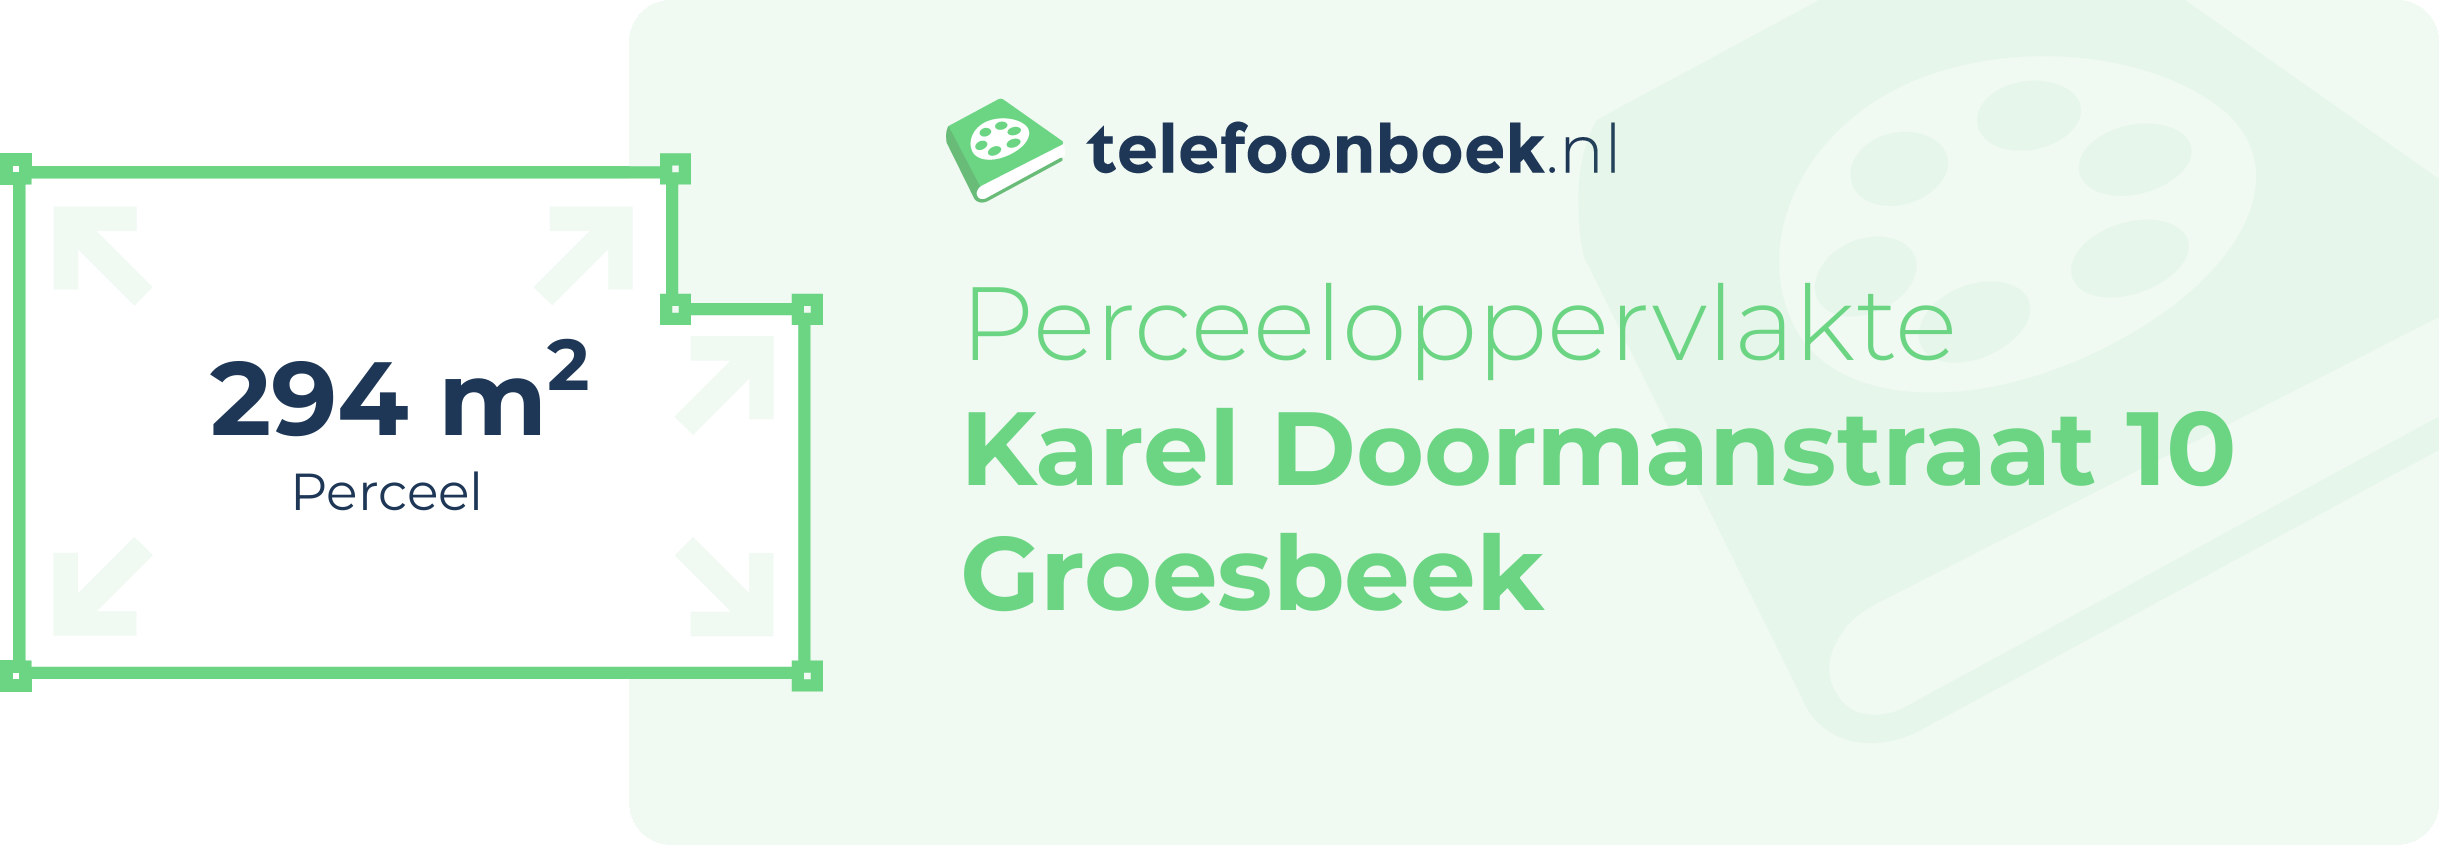 Perceeloppervlakte Karel Doormanstraat 10 Groesbeek